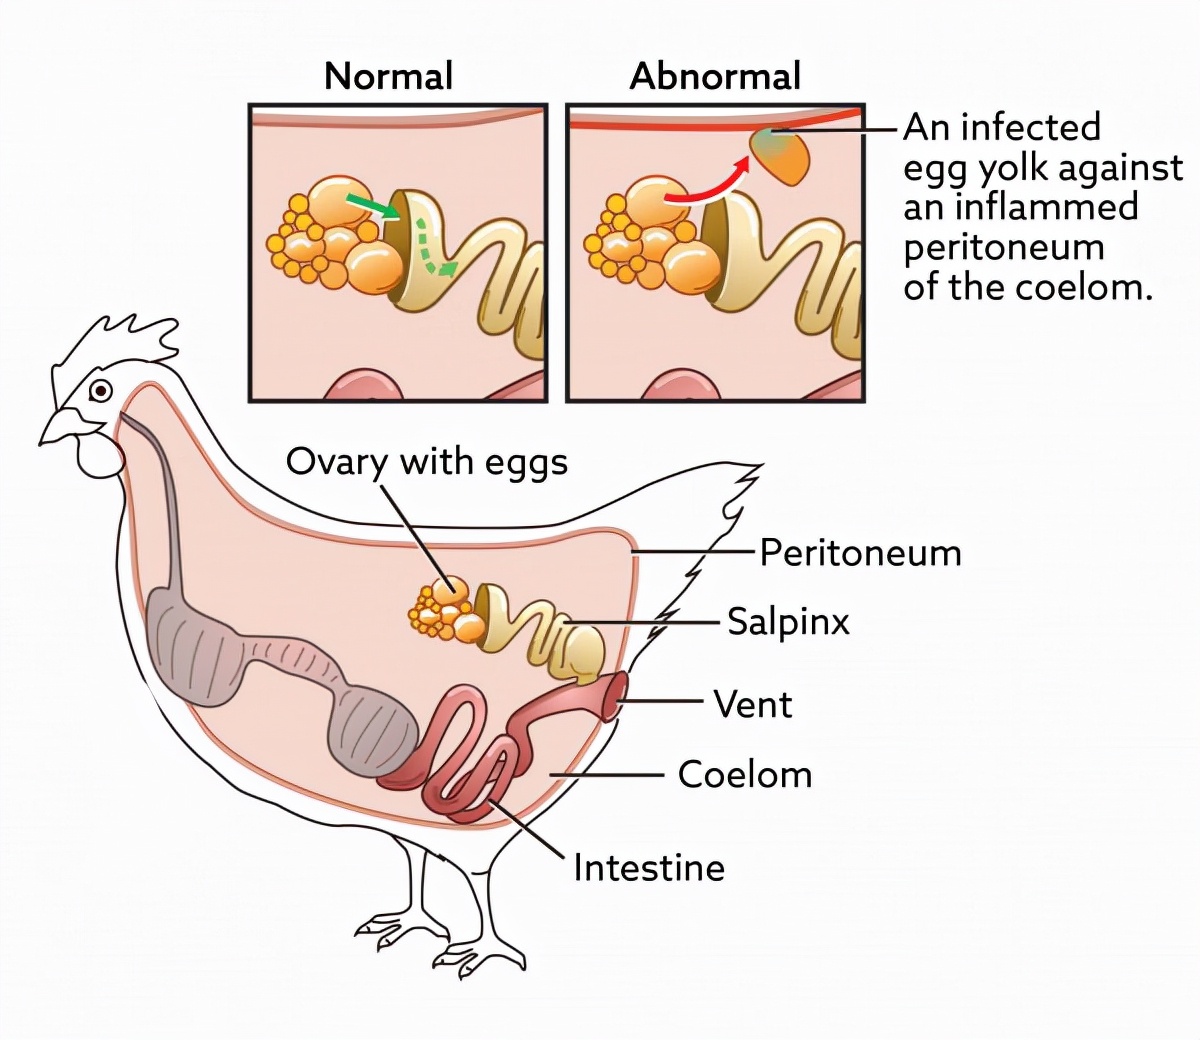 鸡的繁殖方式和过程图片